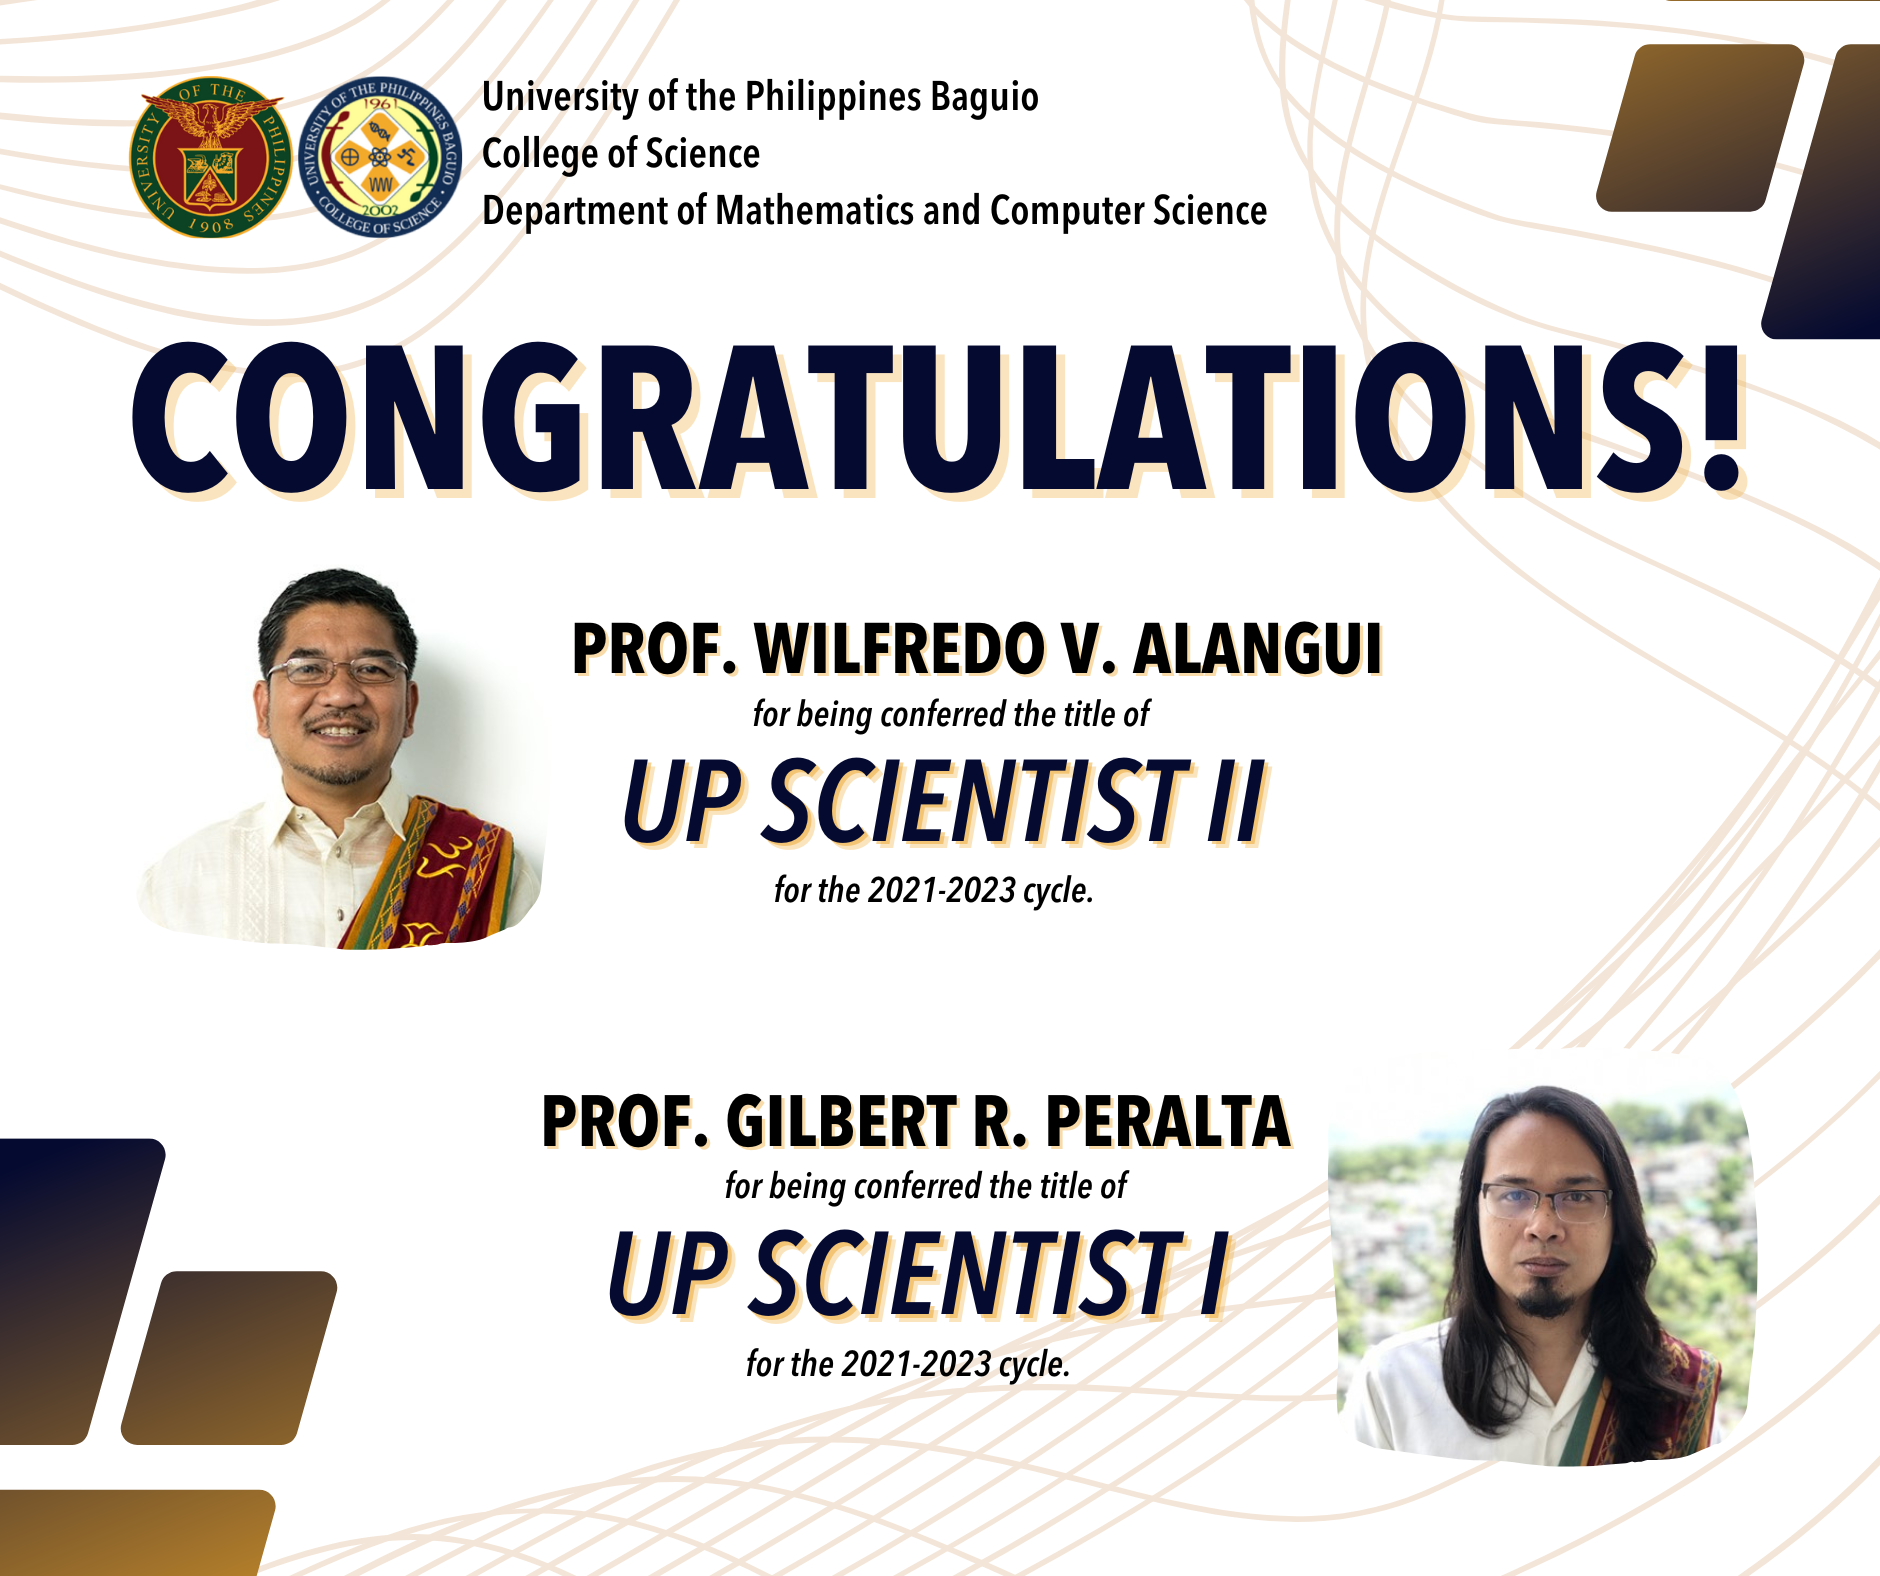 Congratulations! DMCS UP Scientists!